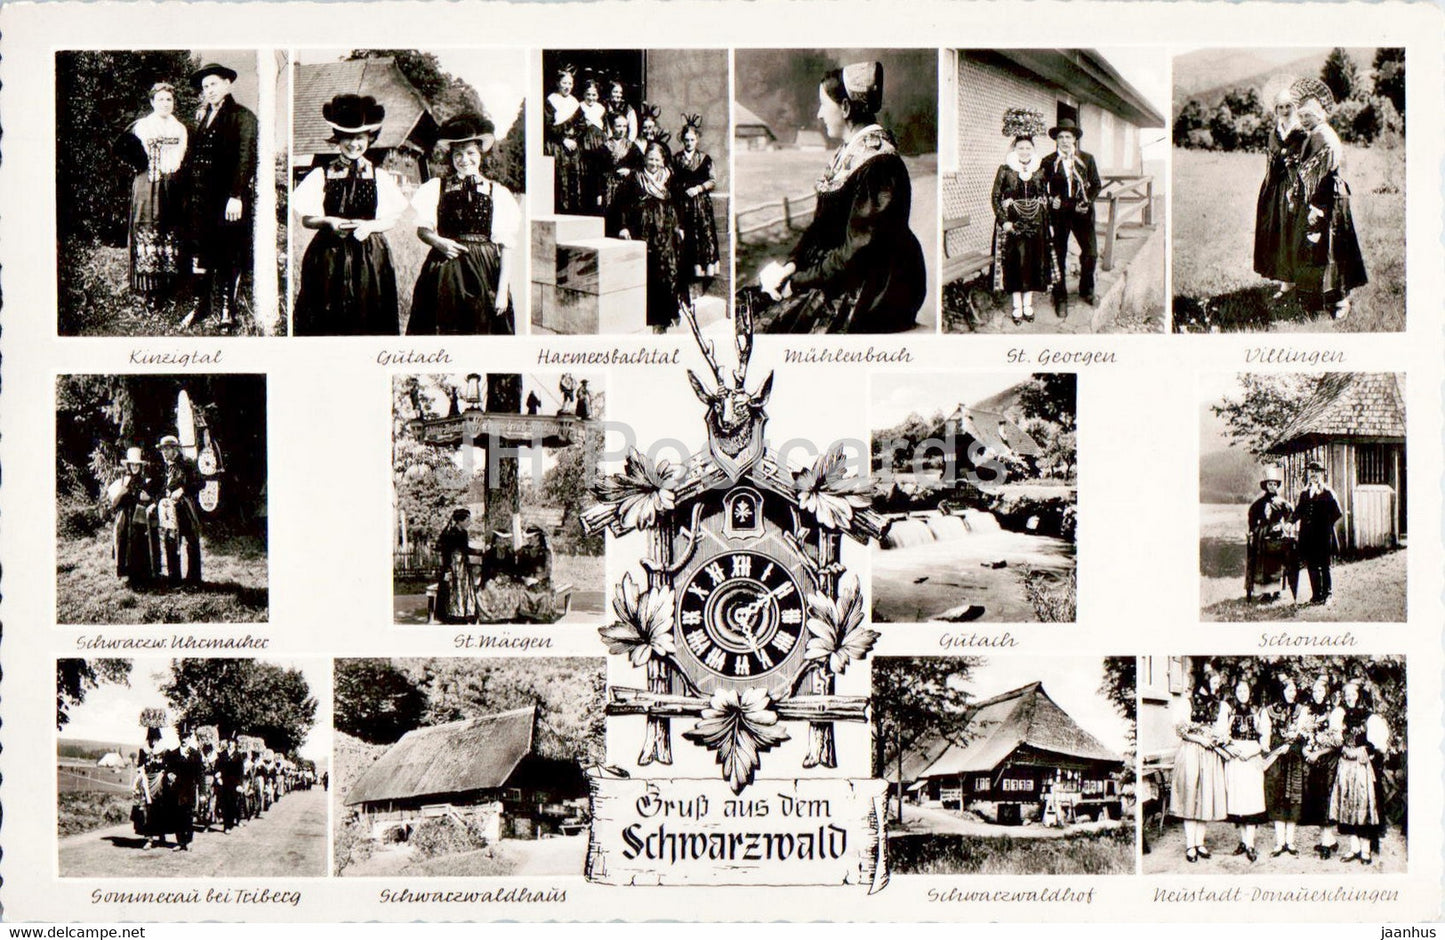 Gruss aus dem Schwarzwald - Trachten und Hauser aus sudlichen Schwarzwald - folk costumes - Germany - unused - JH Postcards